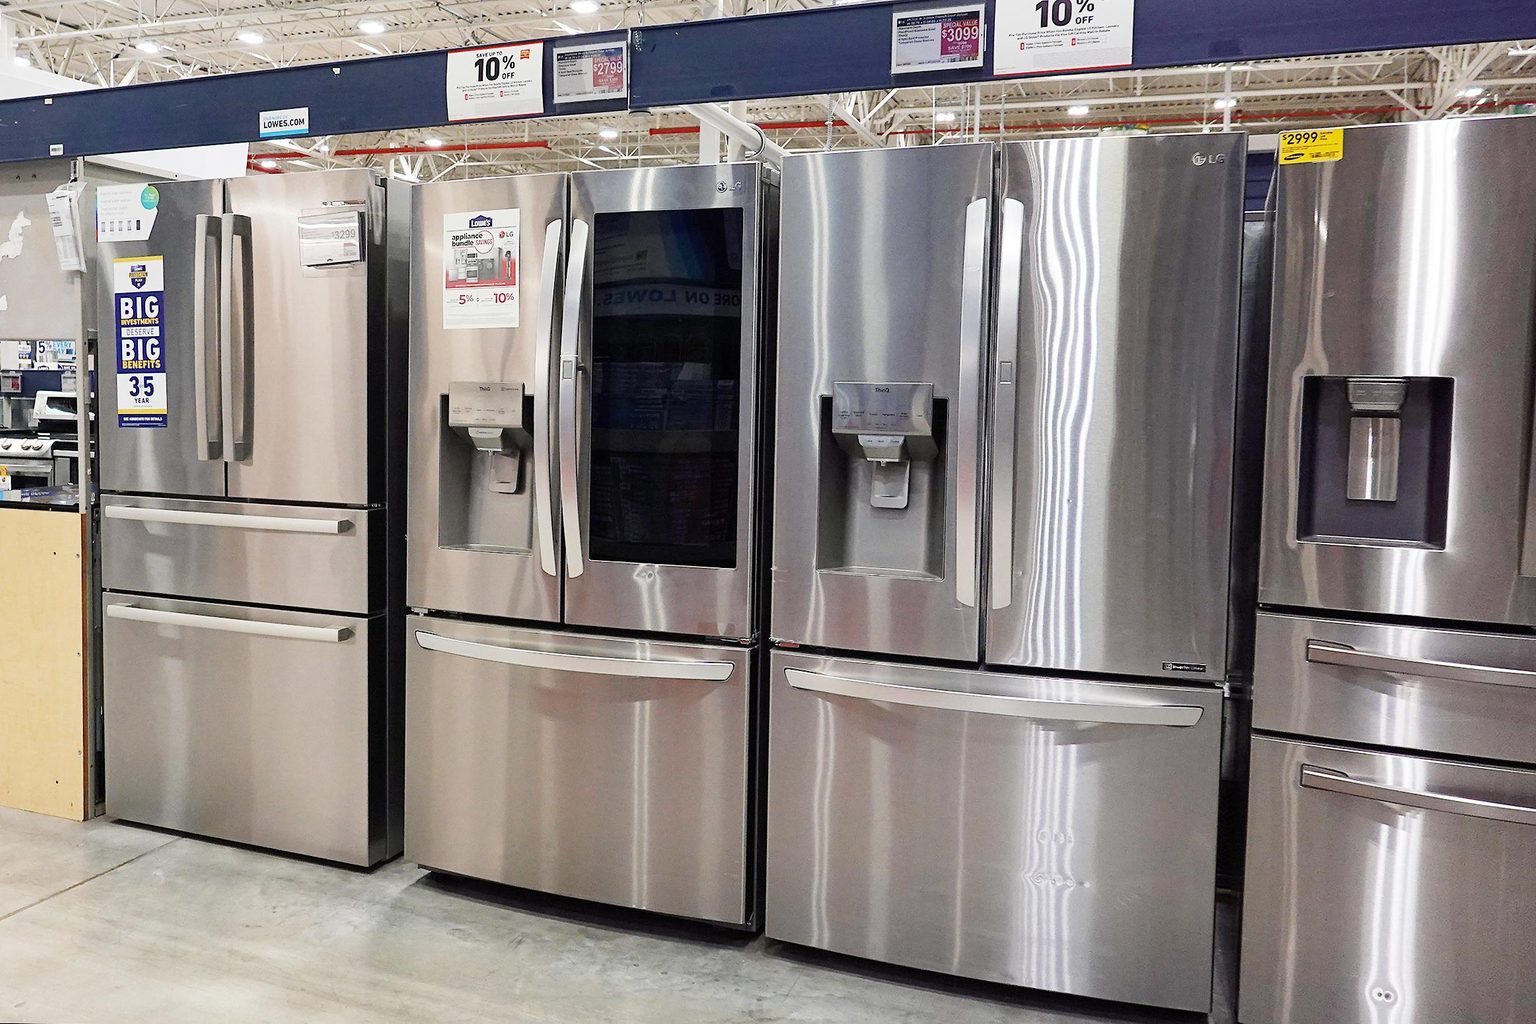 6 thương hiệu tủ lạnh tốt nhất theo gợi ý của chuyên gia gia dụng - Ảnh 1.